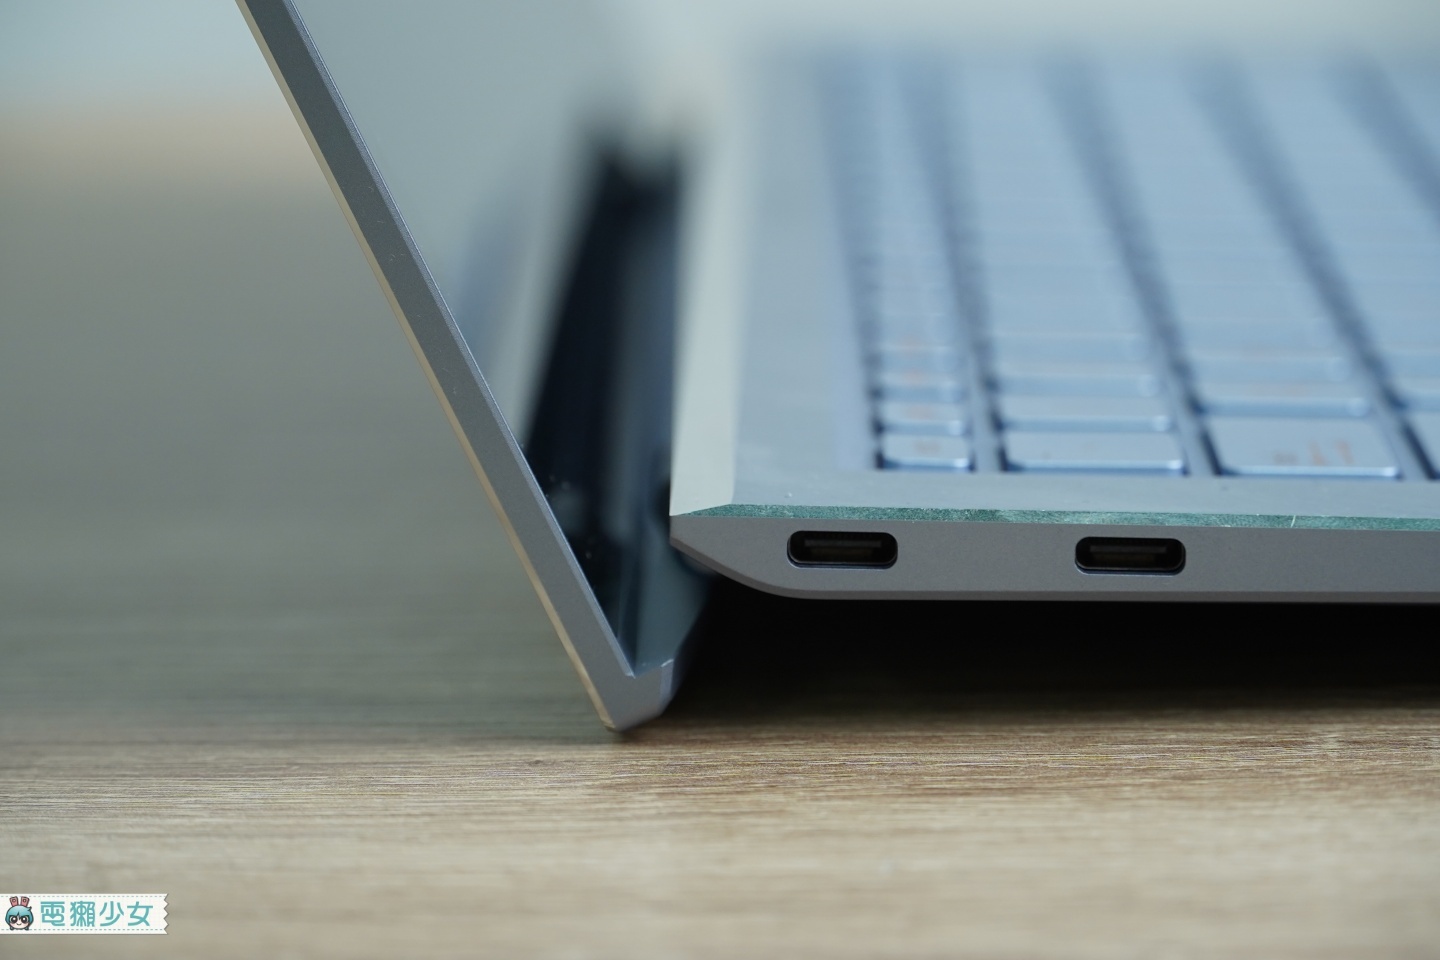 開箱｜『 ZenBook S13 (UX392) 』美‧力無邊 屏占比高達97%，A4機身藏有近14吋螢幕 (10/15更新)